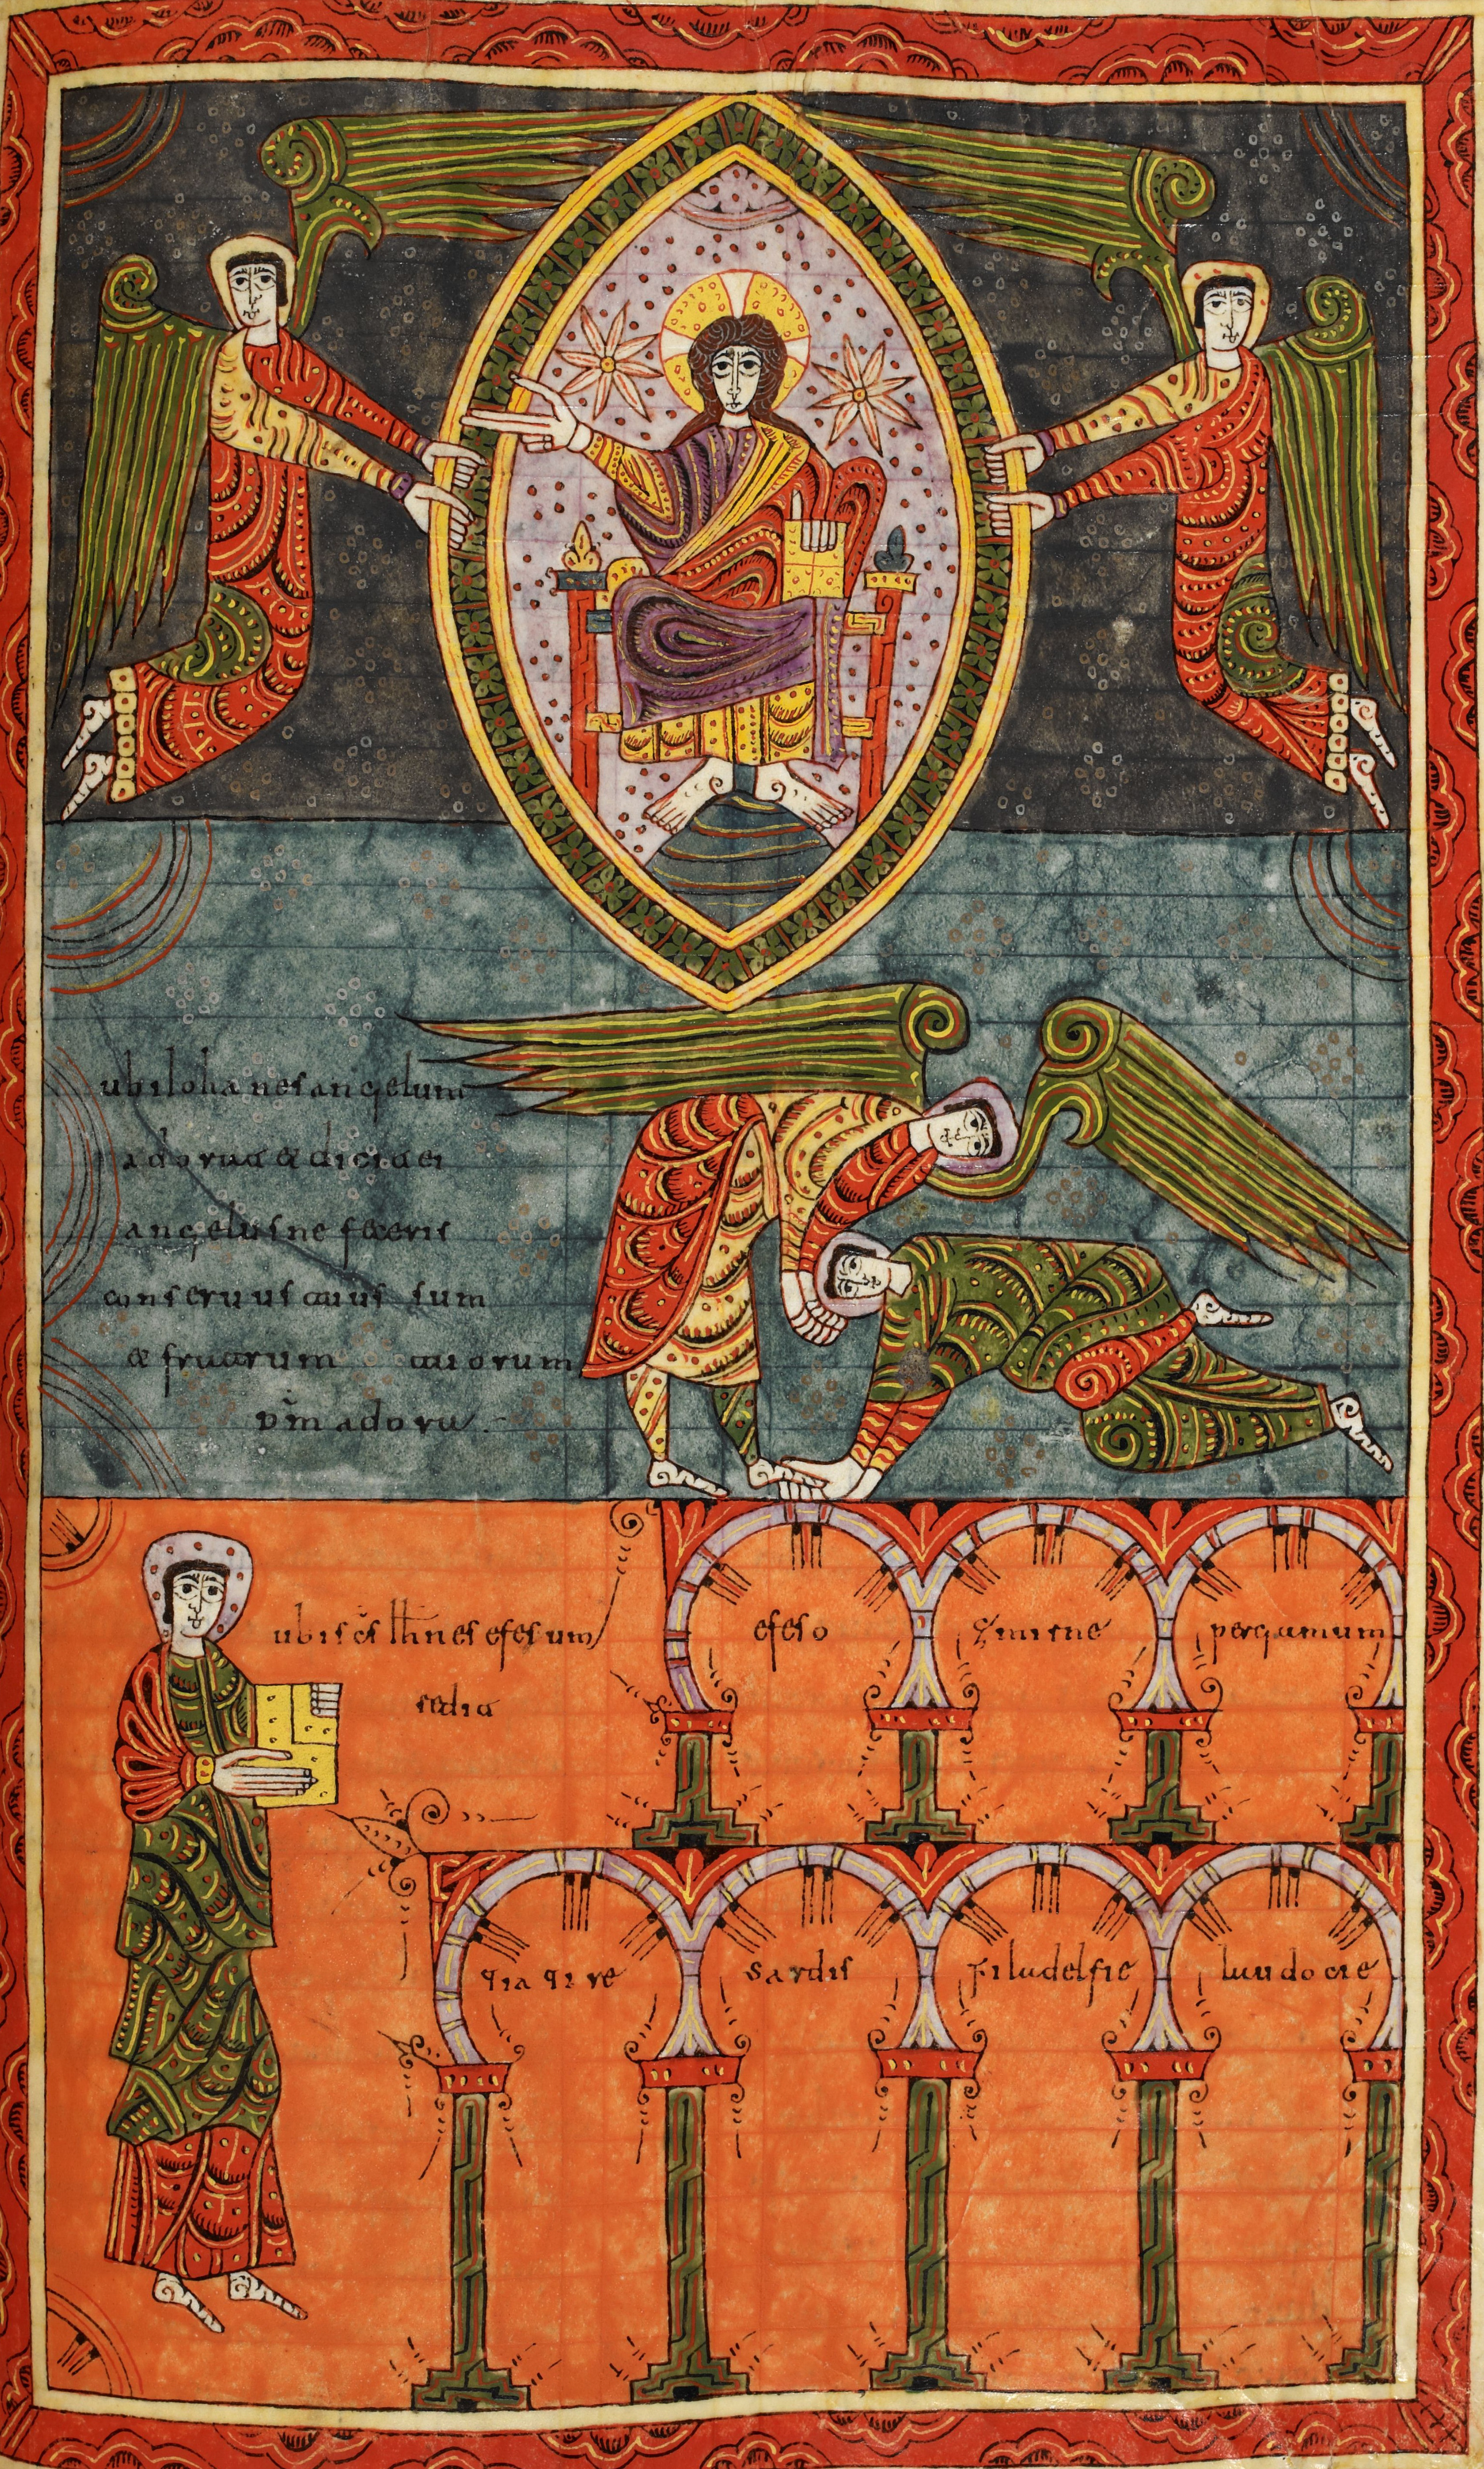 Beatus de Silos, folio 216r – Jean se prosterne à nouveau devant un ange qui l’invite à se relever et à adorer Dieu seul (Ap 22, 8-9) ; le reste de la miniature rappelle celle de la page 91.